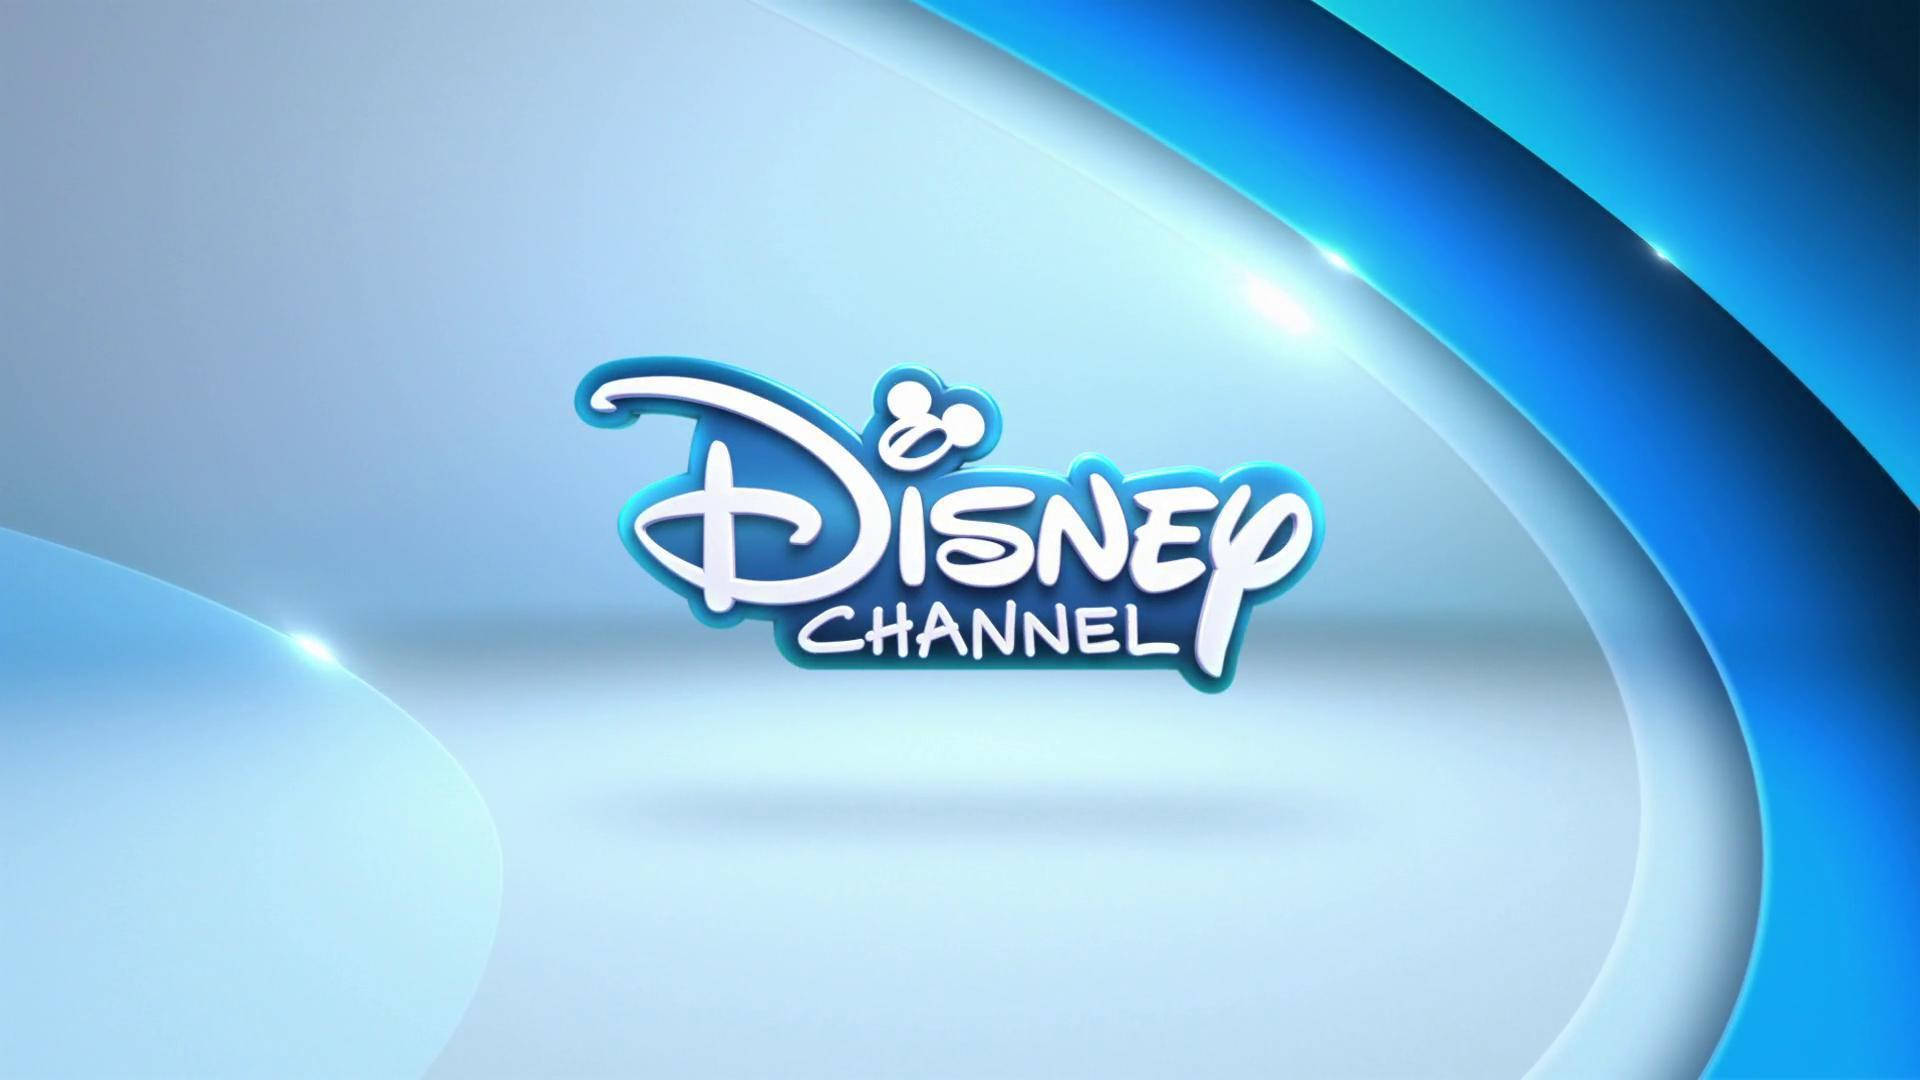 Logoantigo Da Disney Xd Em Azul. Papel de Parede